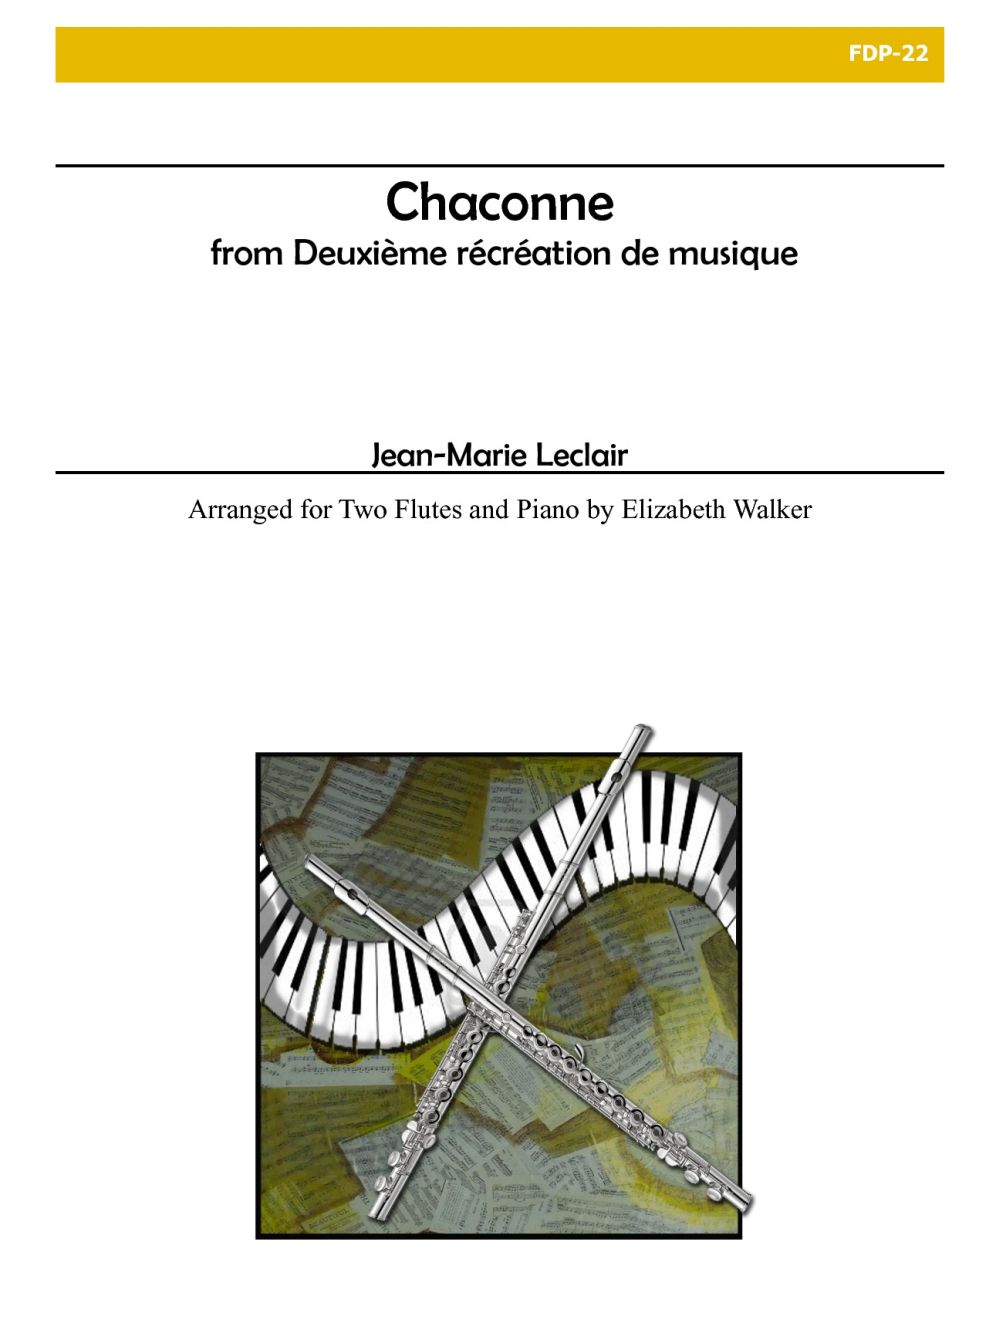 Chaconne From Deuxieme Recreation De Musique, Op. 8 (LECLAIR JEAN-MARIE)